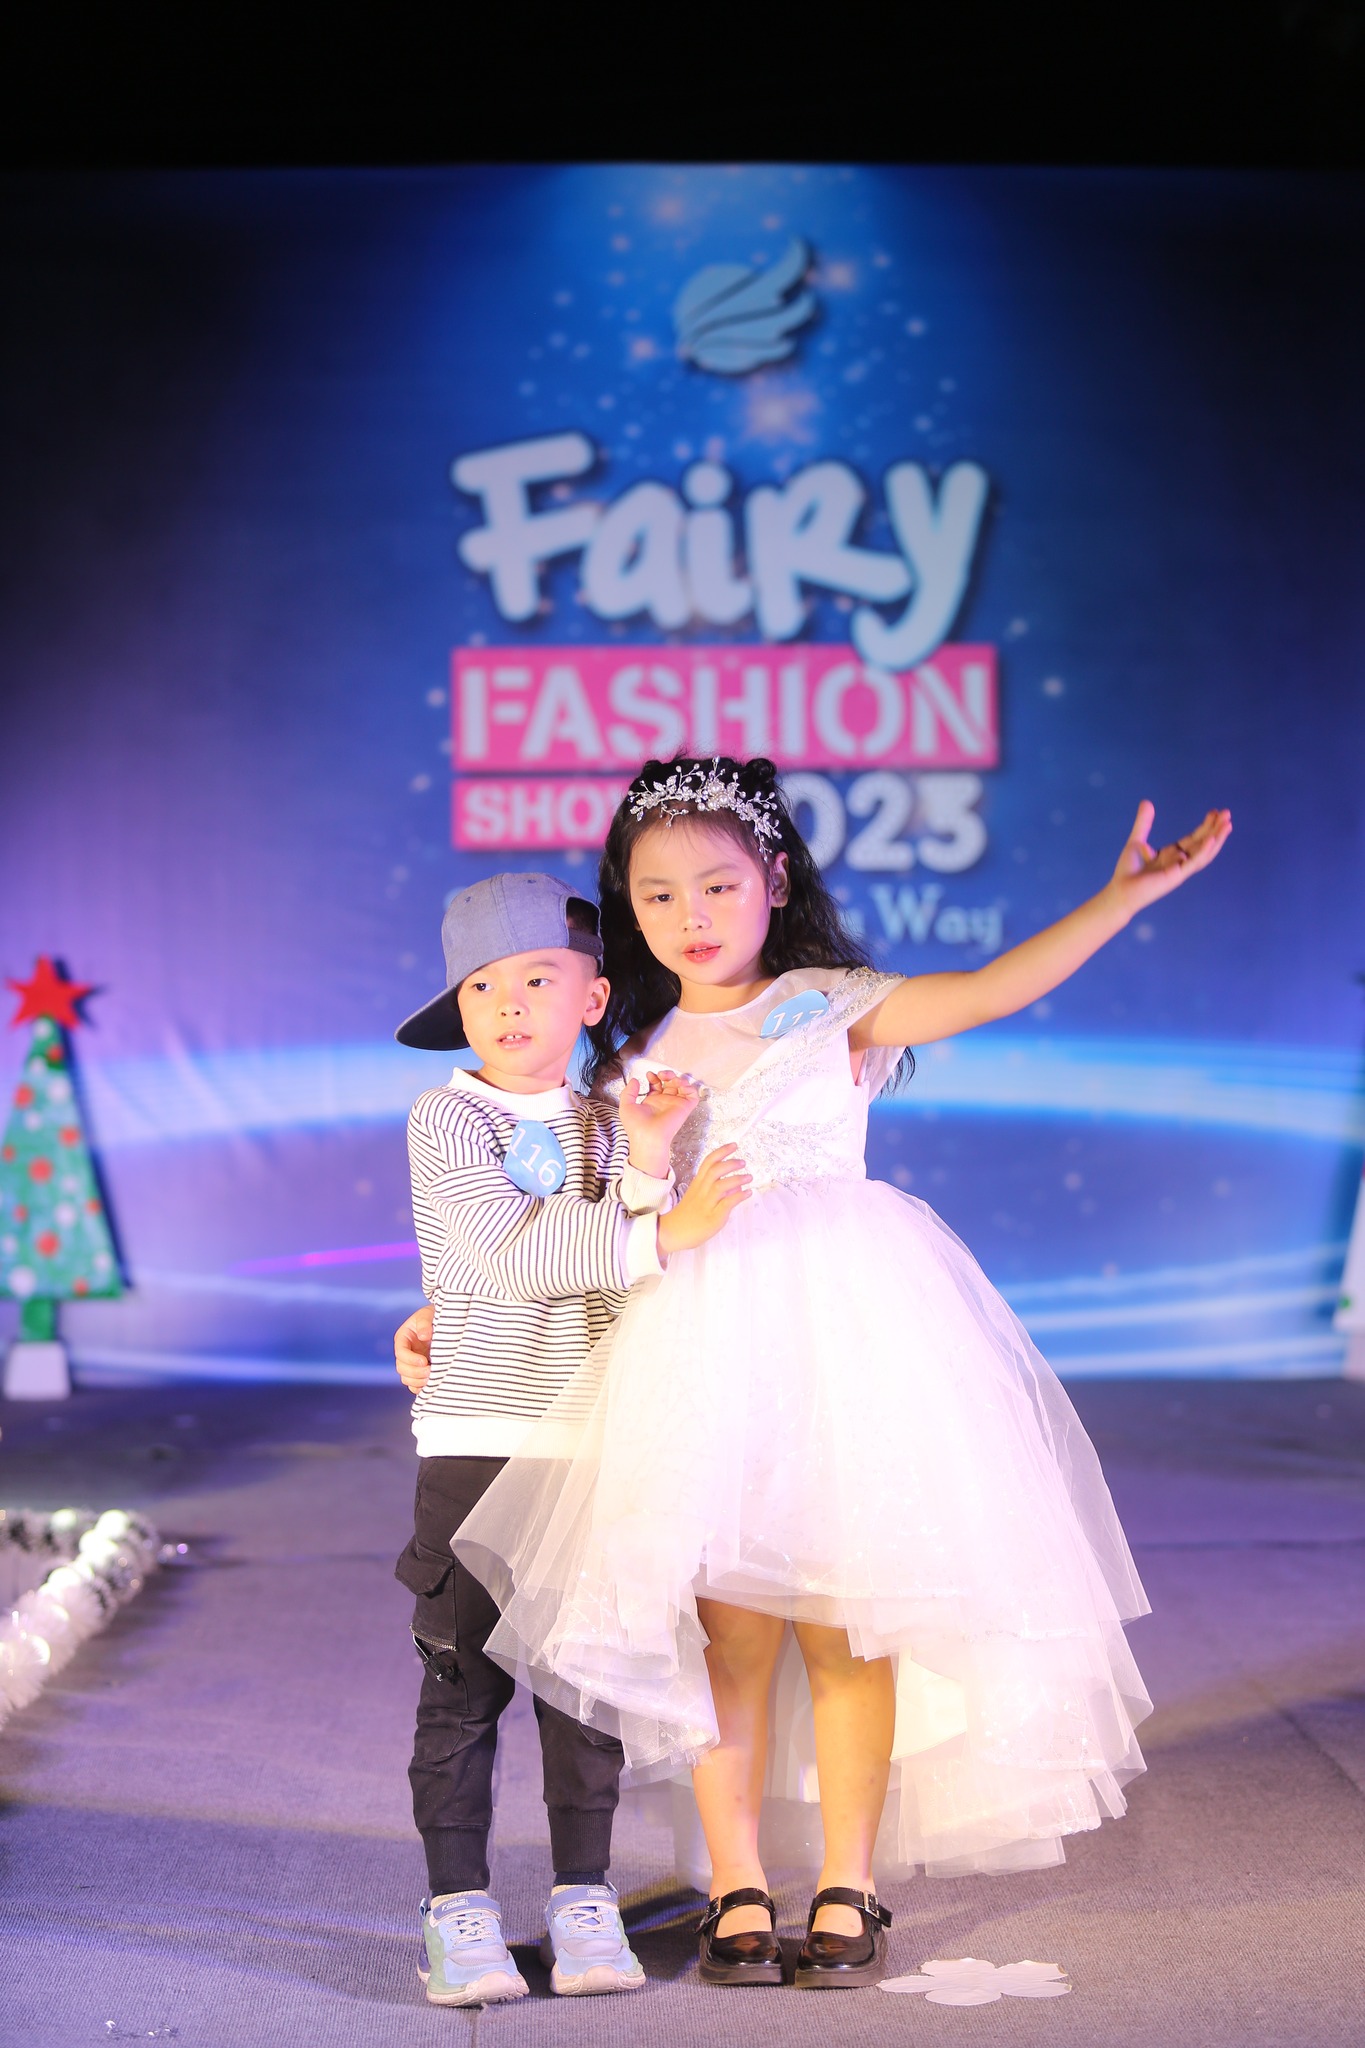 Video chung kết Fairy Fashion Show 2023